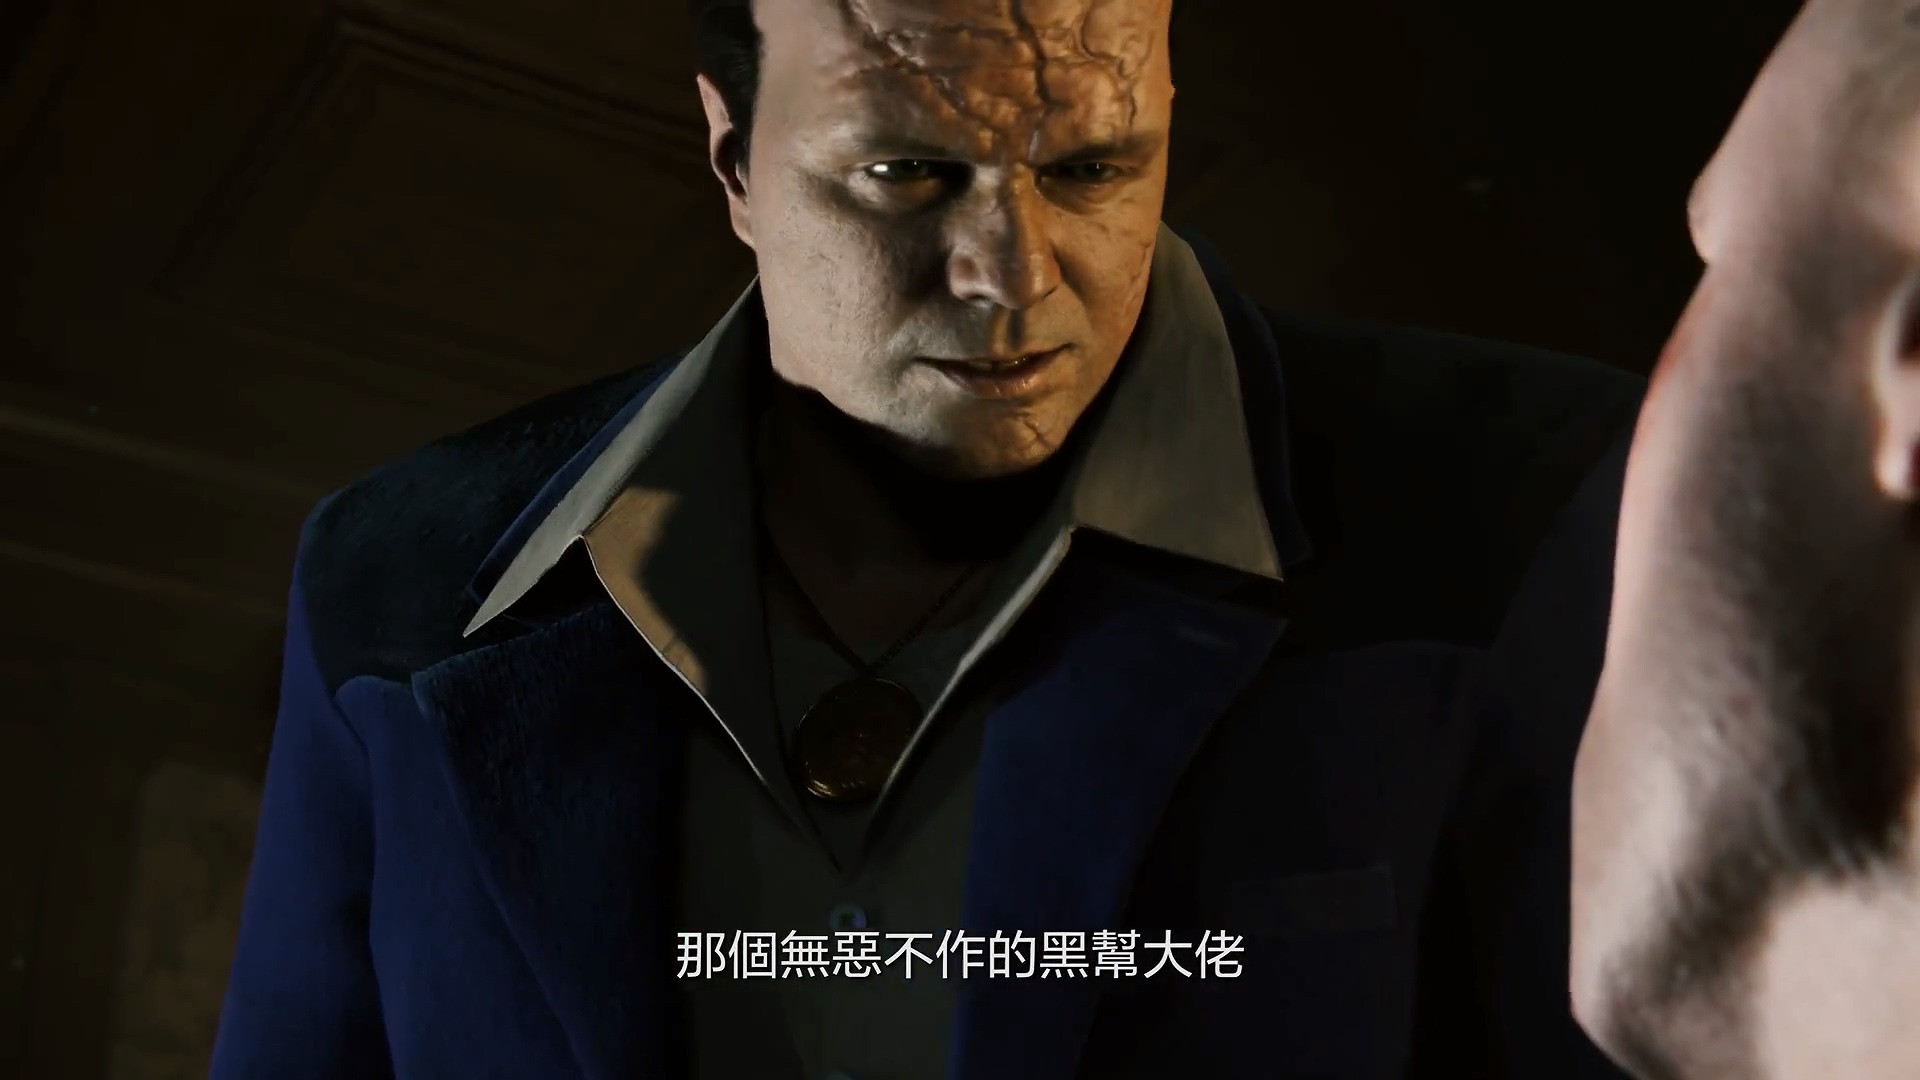 《漫威蜘蛛侠》锤头DLC中文预告展示蜘蛛侠全新战衣